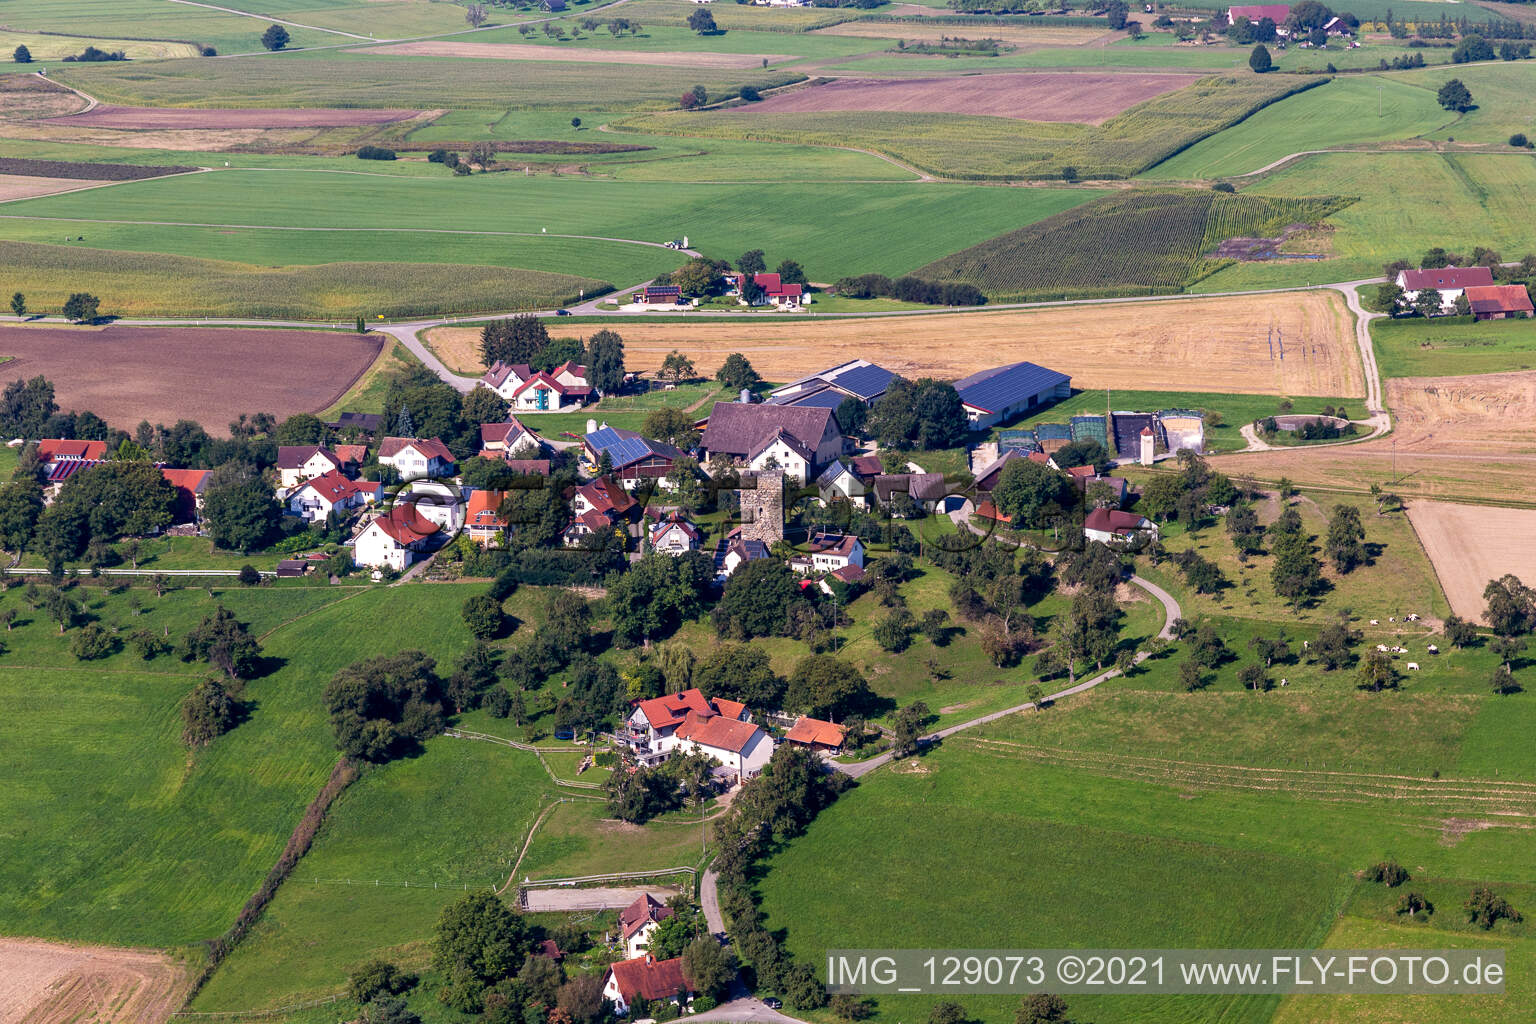 Vue aérienne de Tour d'Hatzen à Wolpertswende dans le département Bade-Wurtemberg, Allemagne